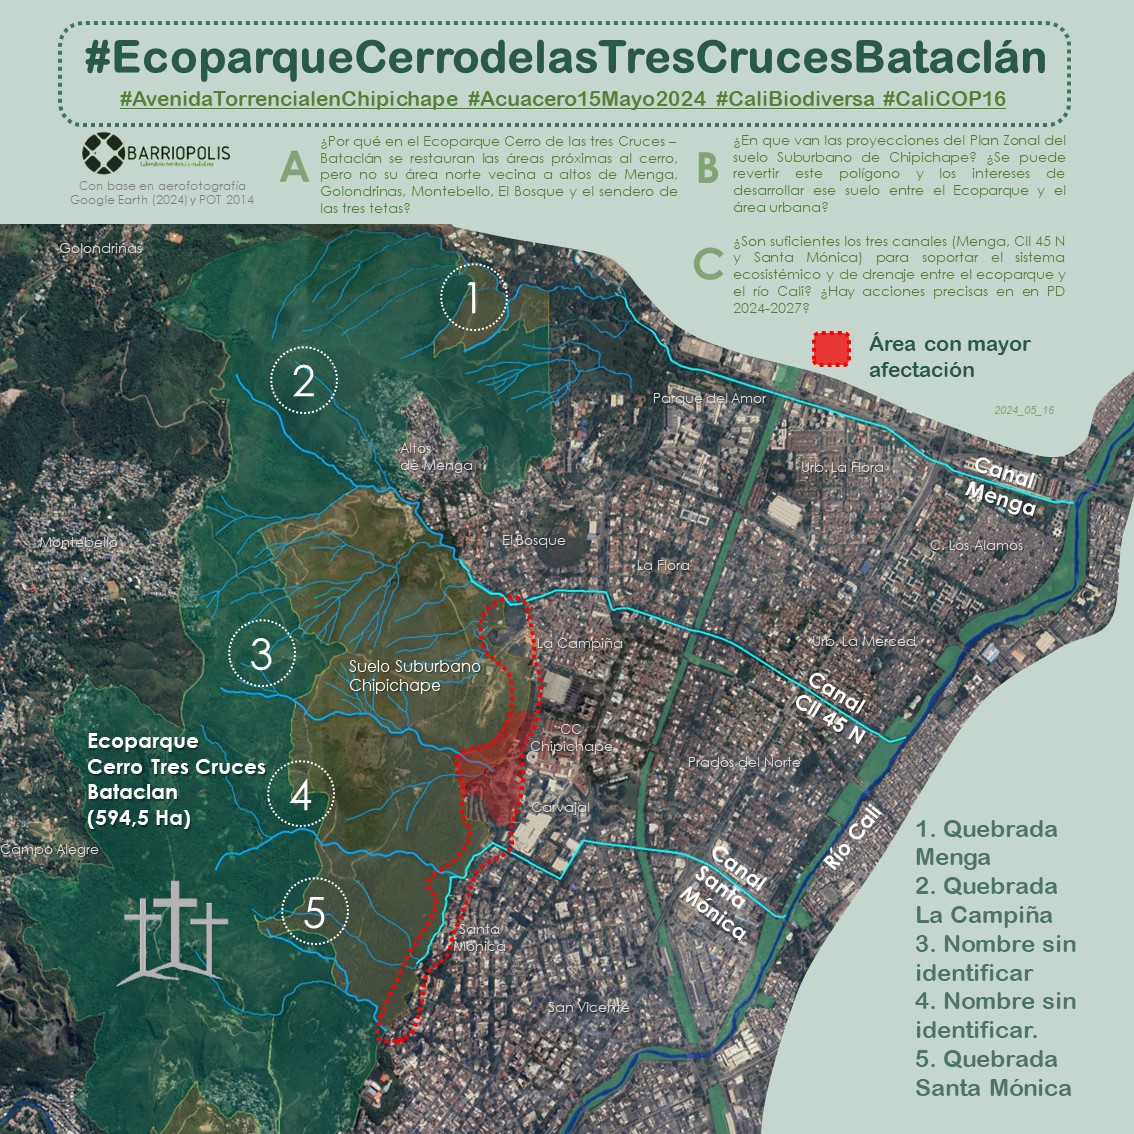 Aportamos esta infografía para comprender las relaciones ecosistémicas y del drenaje entre el #EcoparqueCerroTresCrucesBataclán y el #RíoCali. 

Viene con tres preguntas que nos parecen pertinentes para poner en la agenda en el marco de #CaliBiodiversa #COP16.